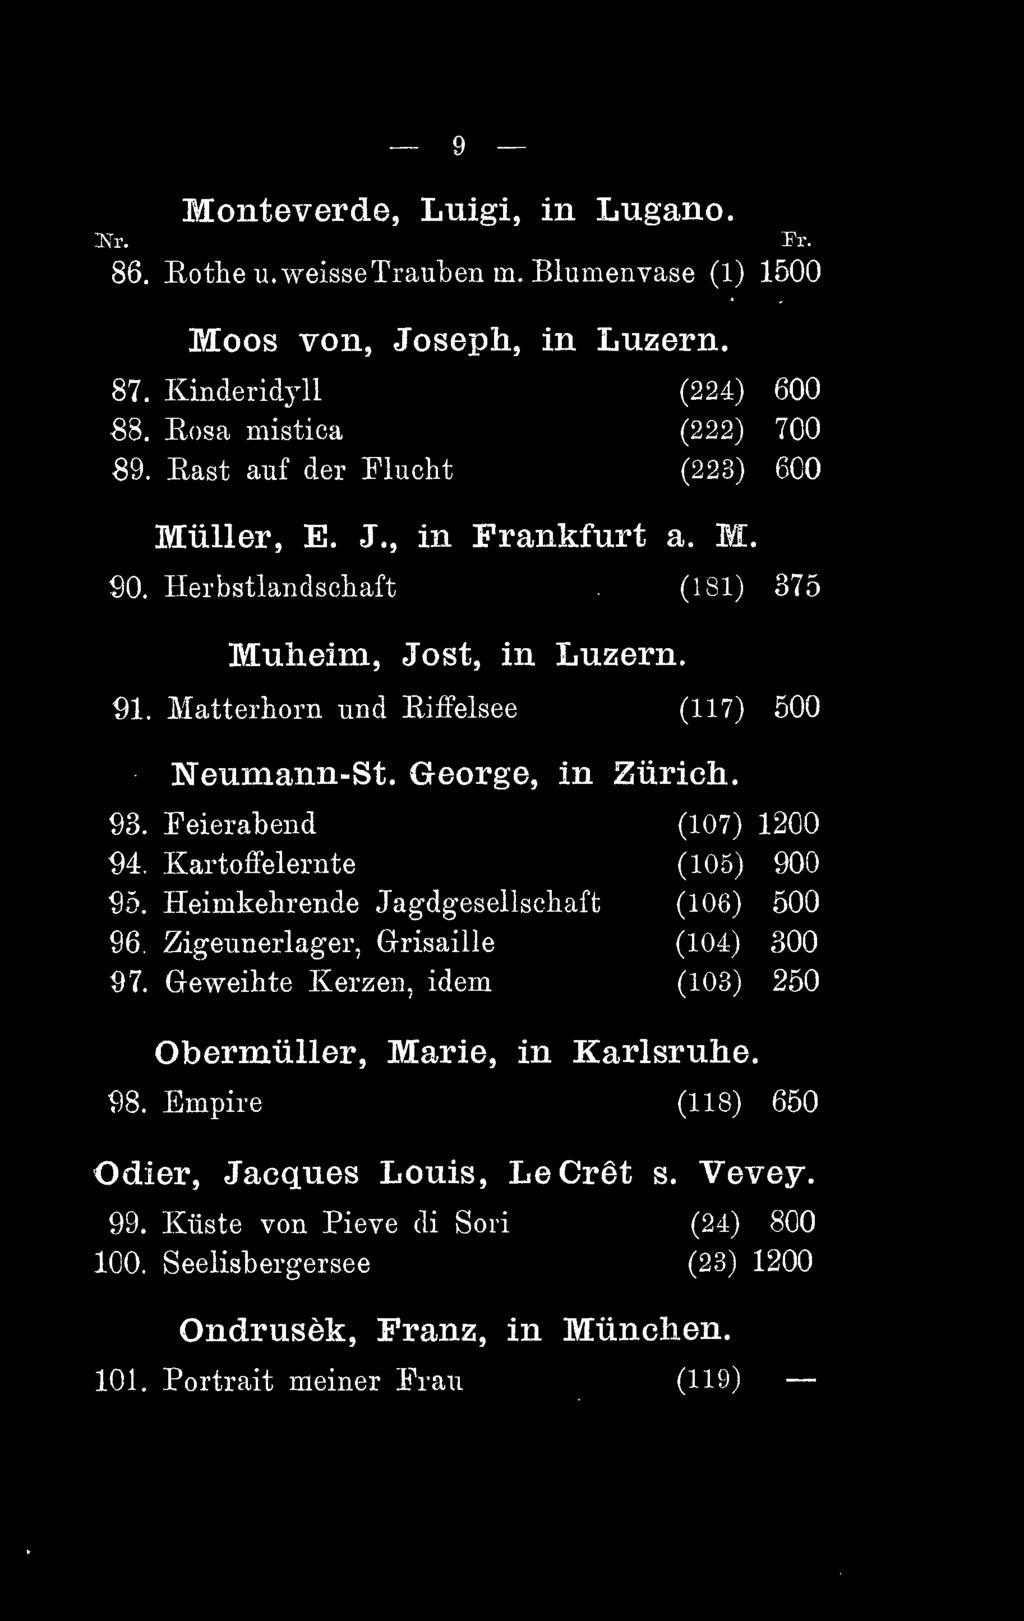 93. Feierabend (107) 1200 94. Kartoffelernte (105) 900 95. Heimkehrende Jagdgesellschaft (106) 500 96. Zigeunerlager, Glrisaille (104) 300 97.